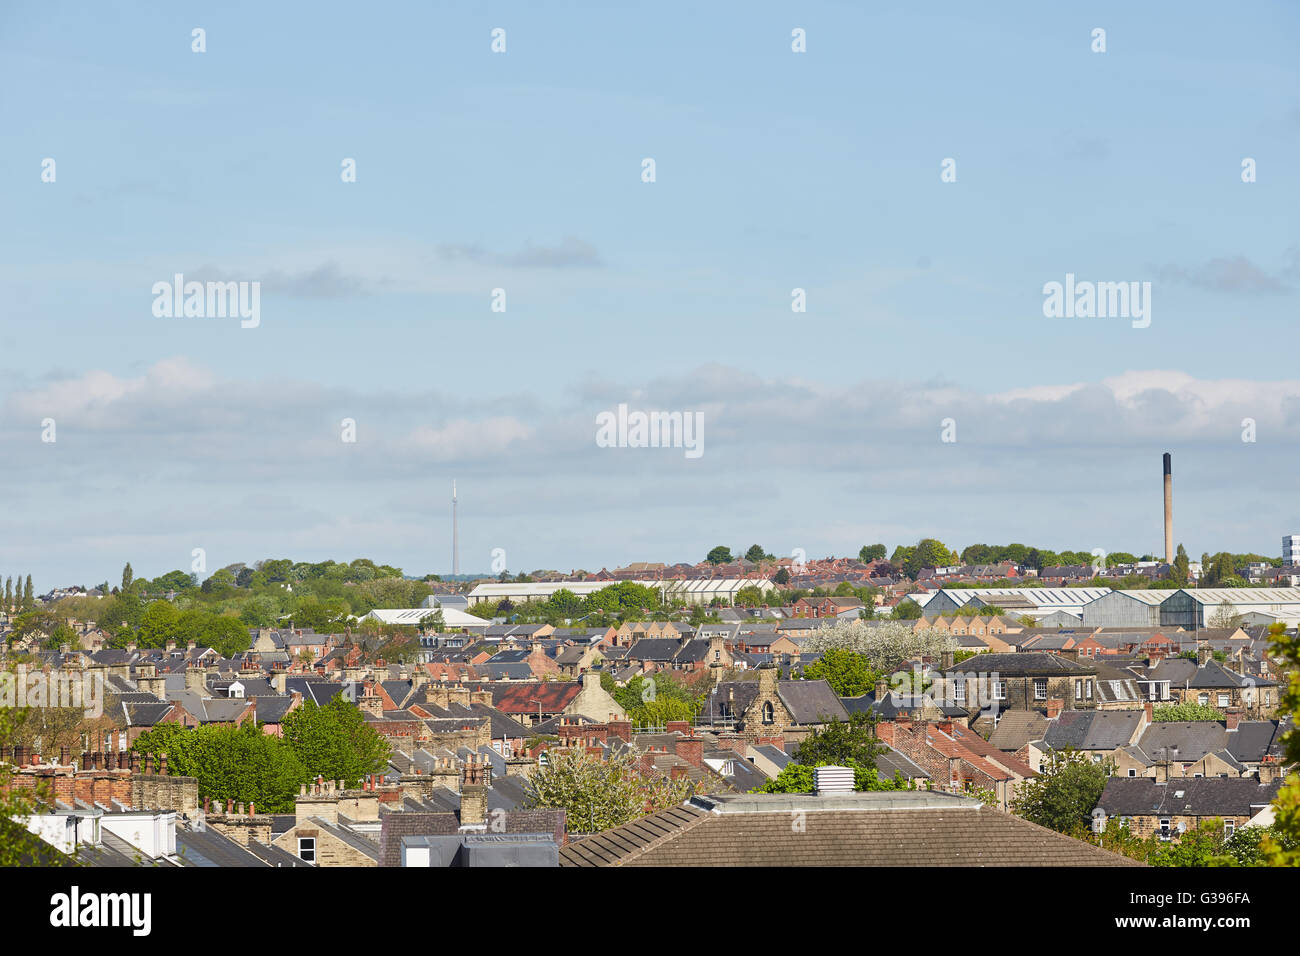 Le centre-ville de Barnsley horizon de toits toits d'ardoises cheminées à travers la ville en pierre de sable Banque D'Images